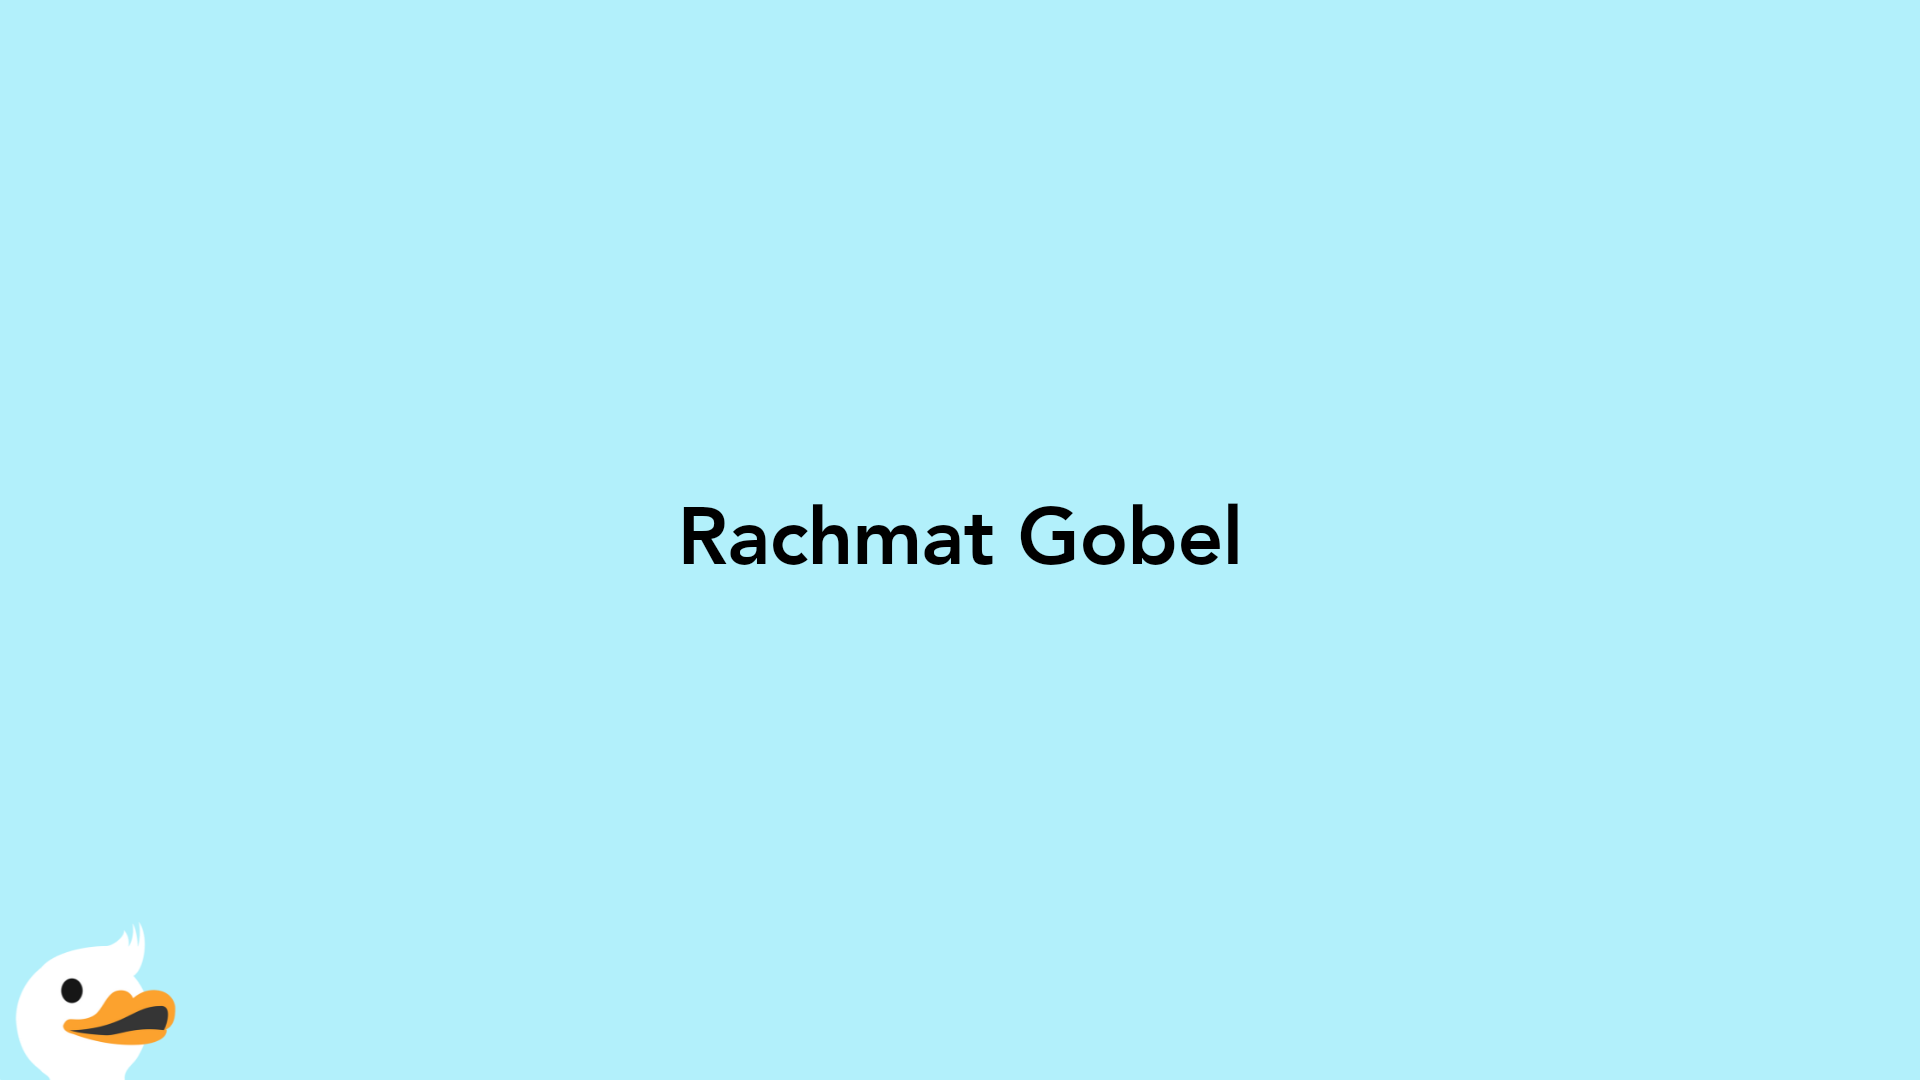 Rachmat Gobel